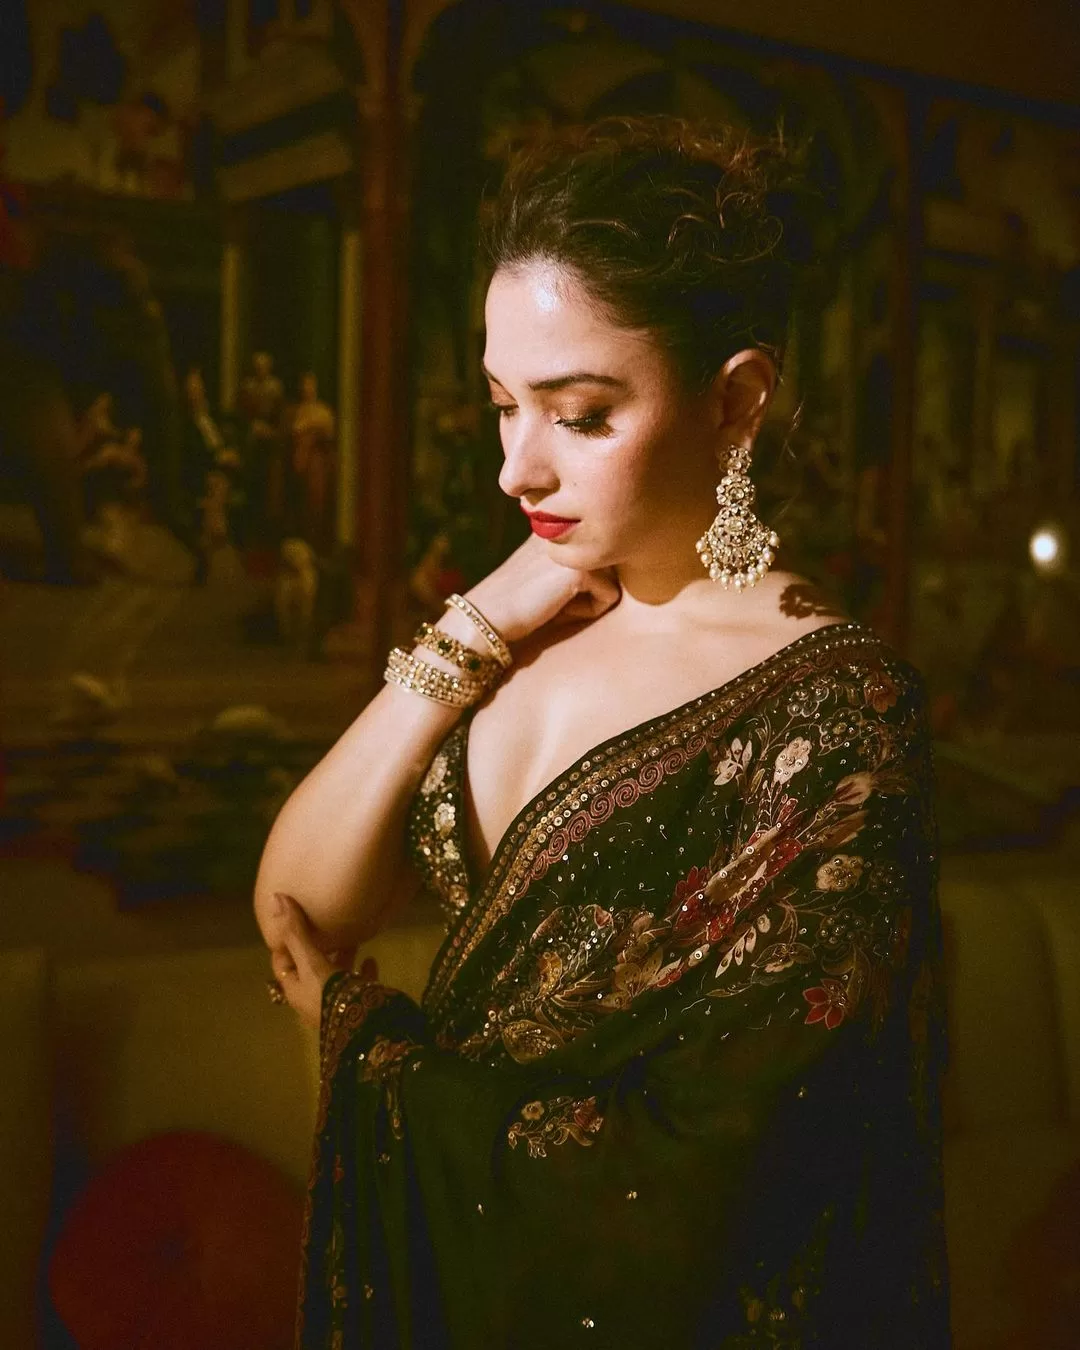 Tamannaah Bhatia's Saree Elegance Steals the Show at Randeep Hooda's Wedding: Black Floral Saree, Stunning Accessories, and Glamorous Makeup!